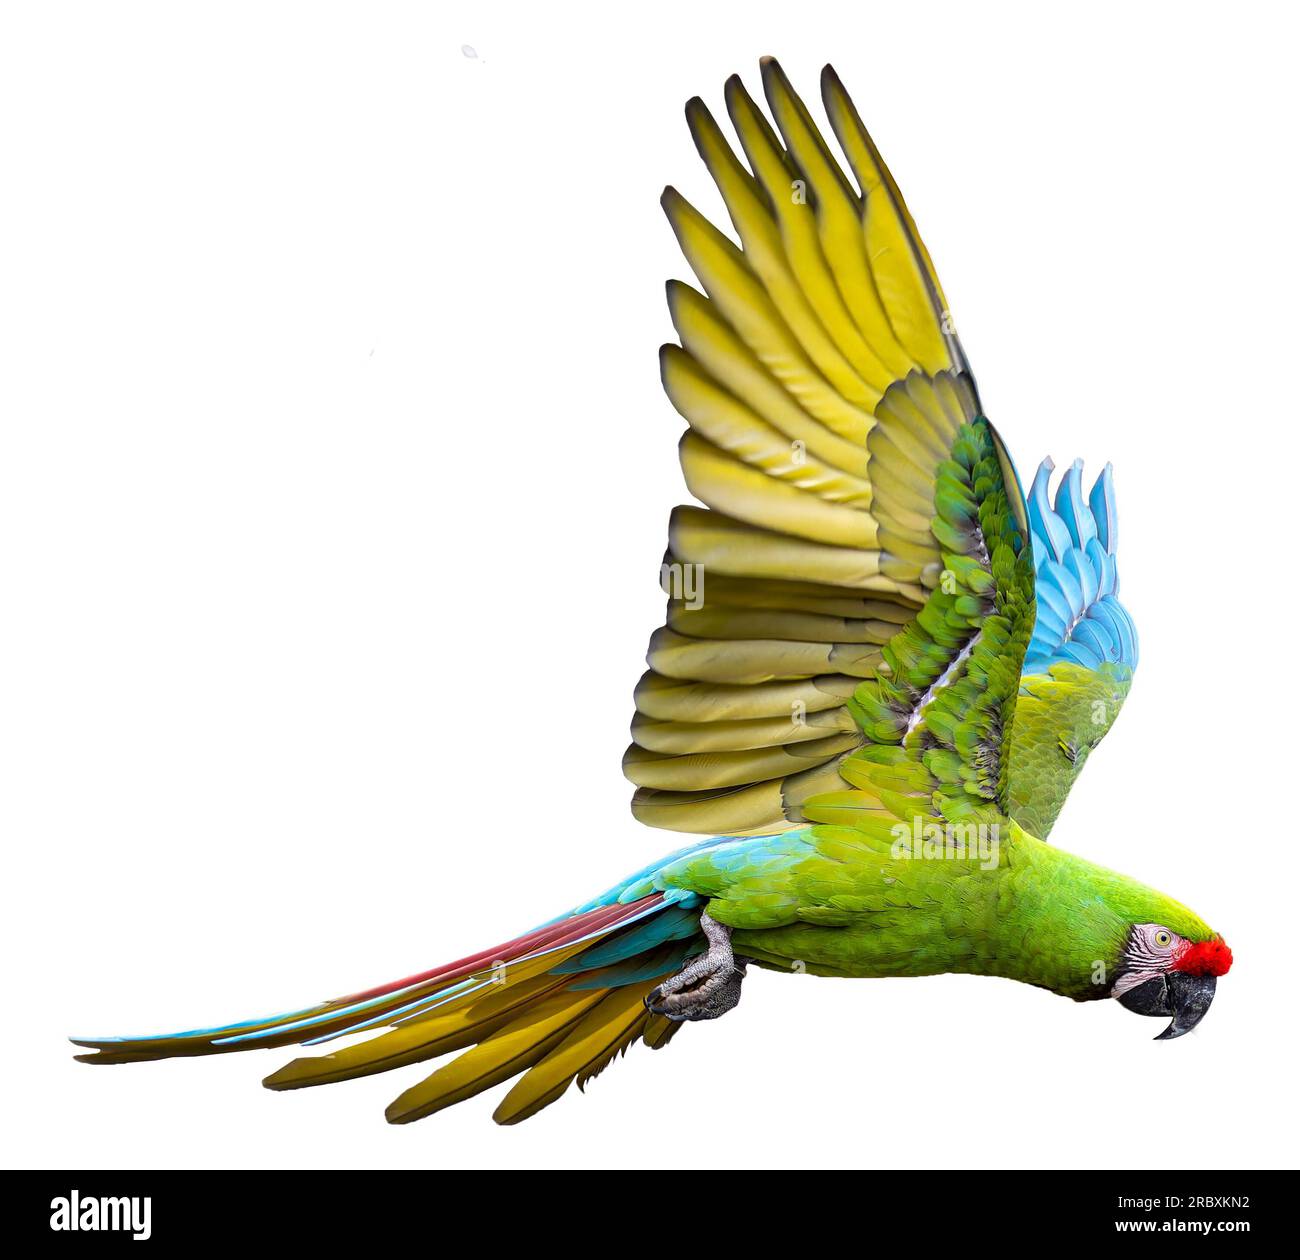 Vue rapprochée d'un Macaw militaire volant (Ara militaris), isolé sur fond blanc Banque D'Images